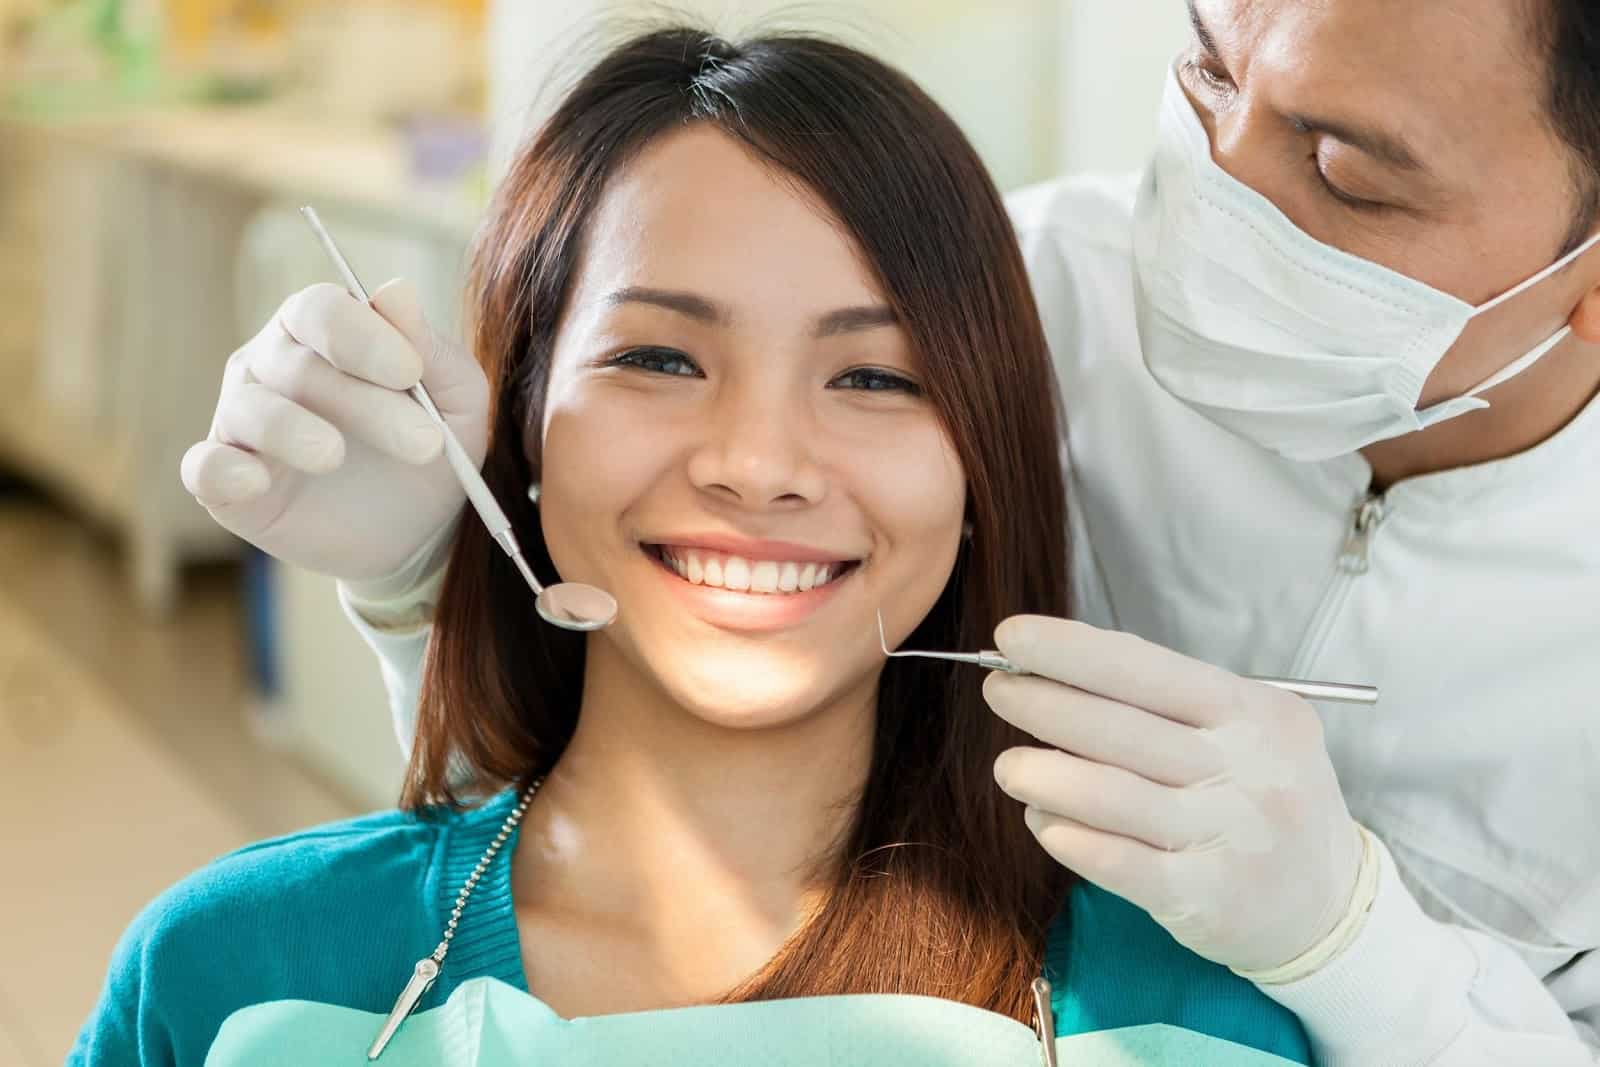 هل يمكن أن يؤدي التحجيم إلى جعل الأسنان حساسة؟